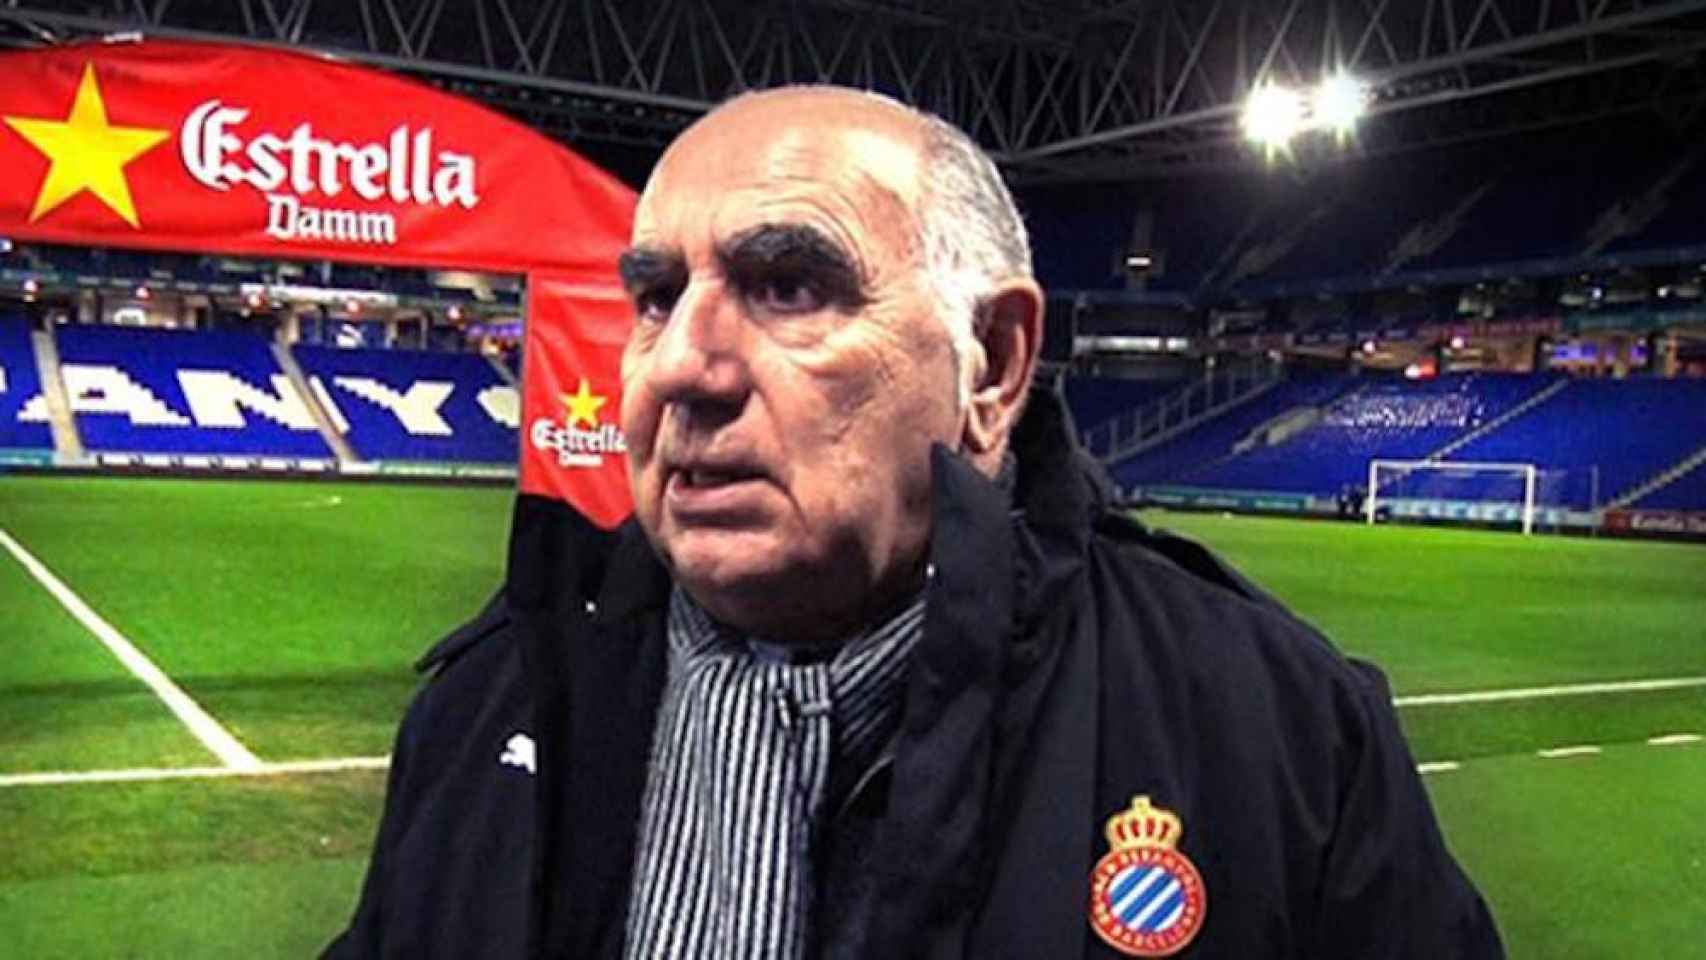 Una foto de archivo del delegado del RCD Espanyol, José María Calzón, racismo